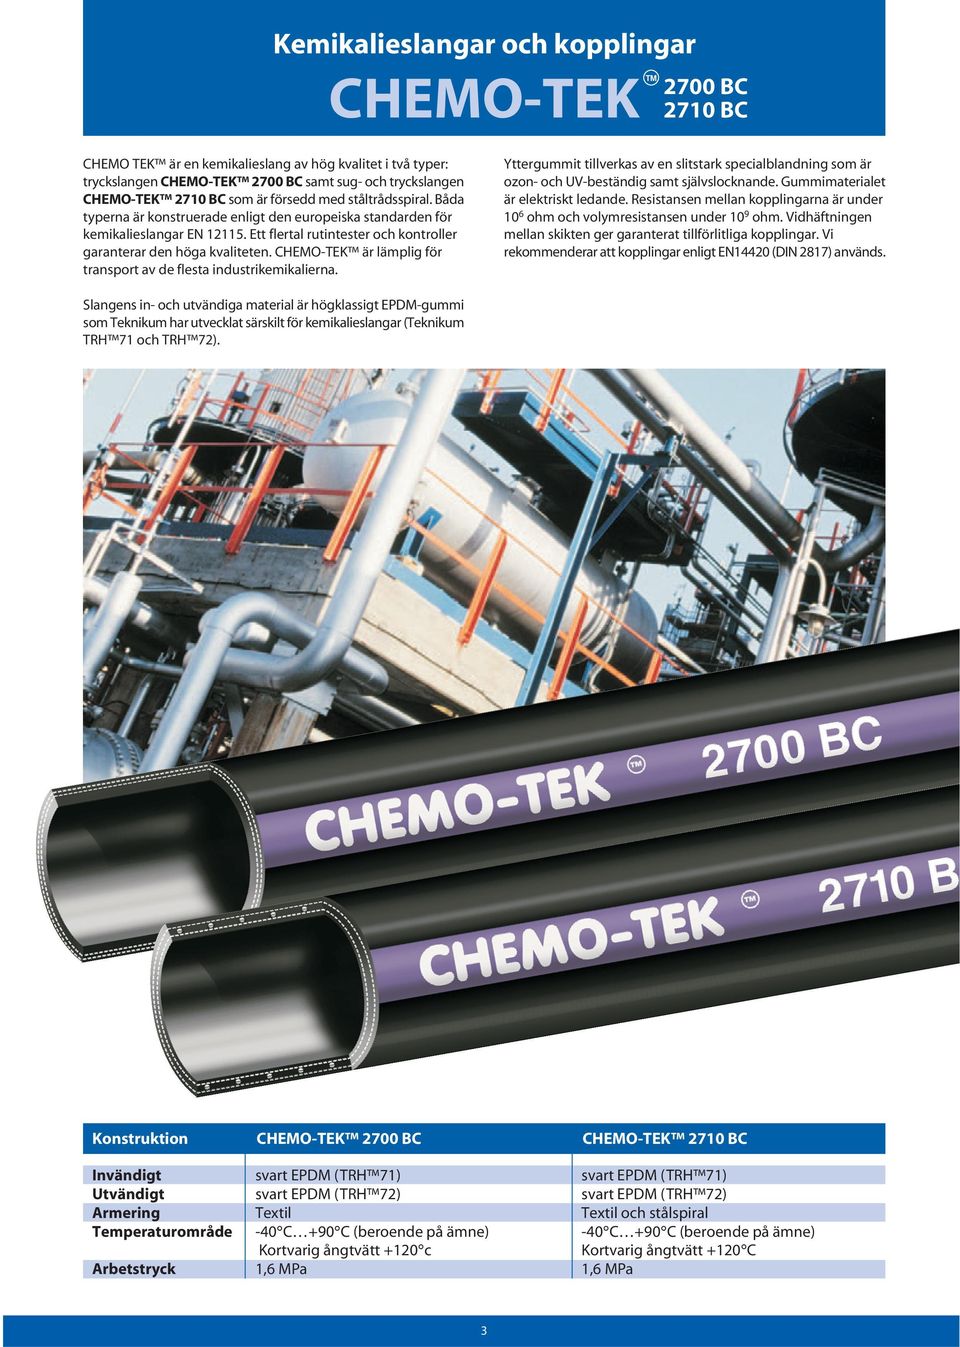 CHEMO-TEK är lämplig för transport av de flesta industrikemikalierna. Yttergummit tillverkas av en slitstark specialblandning som är ozon- och UV-beständig samt självslocknande.